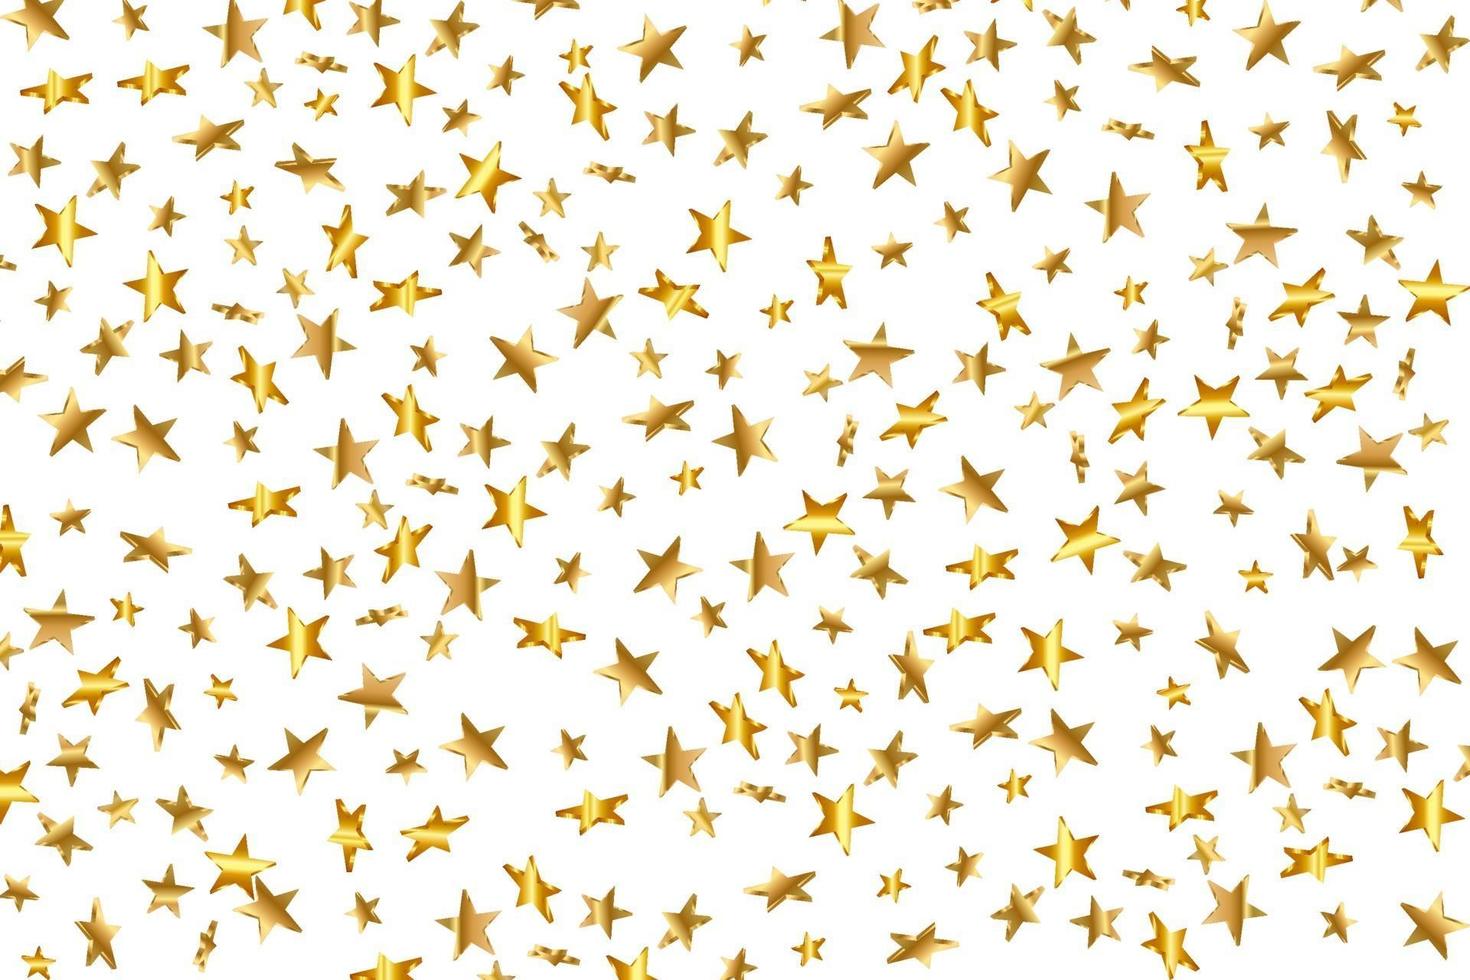 3d Stern fällt. Goldgelber Sternenhimmel auf transparentem Hintergrund. Vektor Konfetti Stern Hintergrund. goldene Sternenkarte. Konfetti fallen chaotisches Dekor.